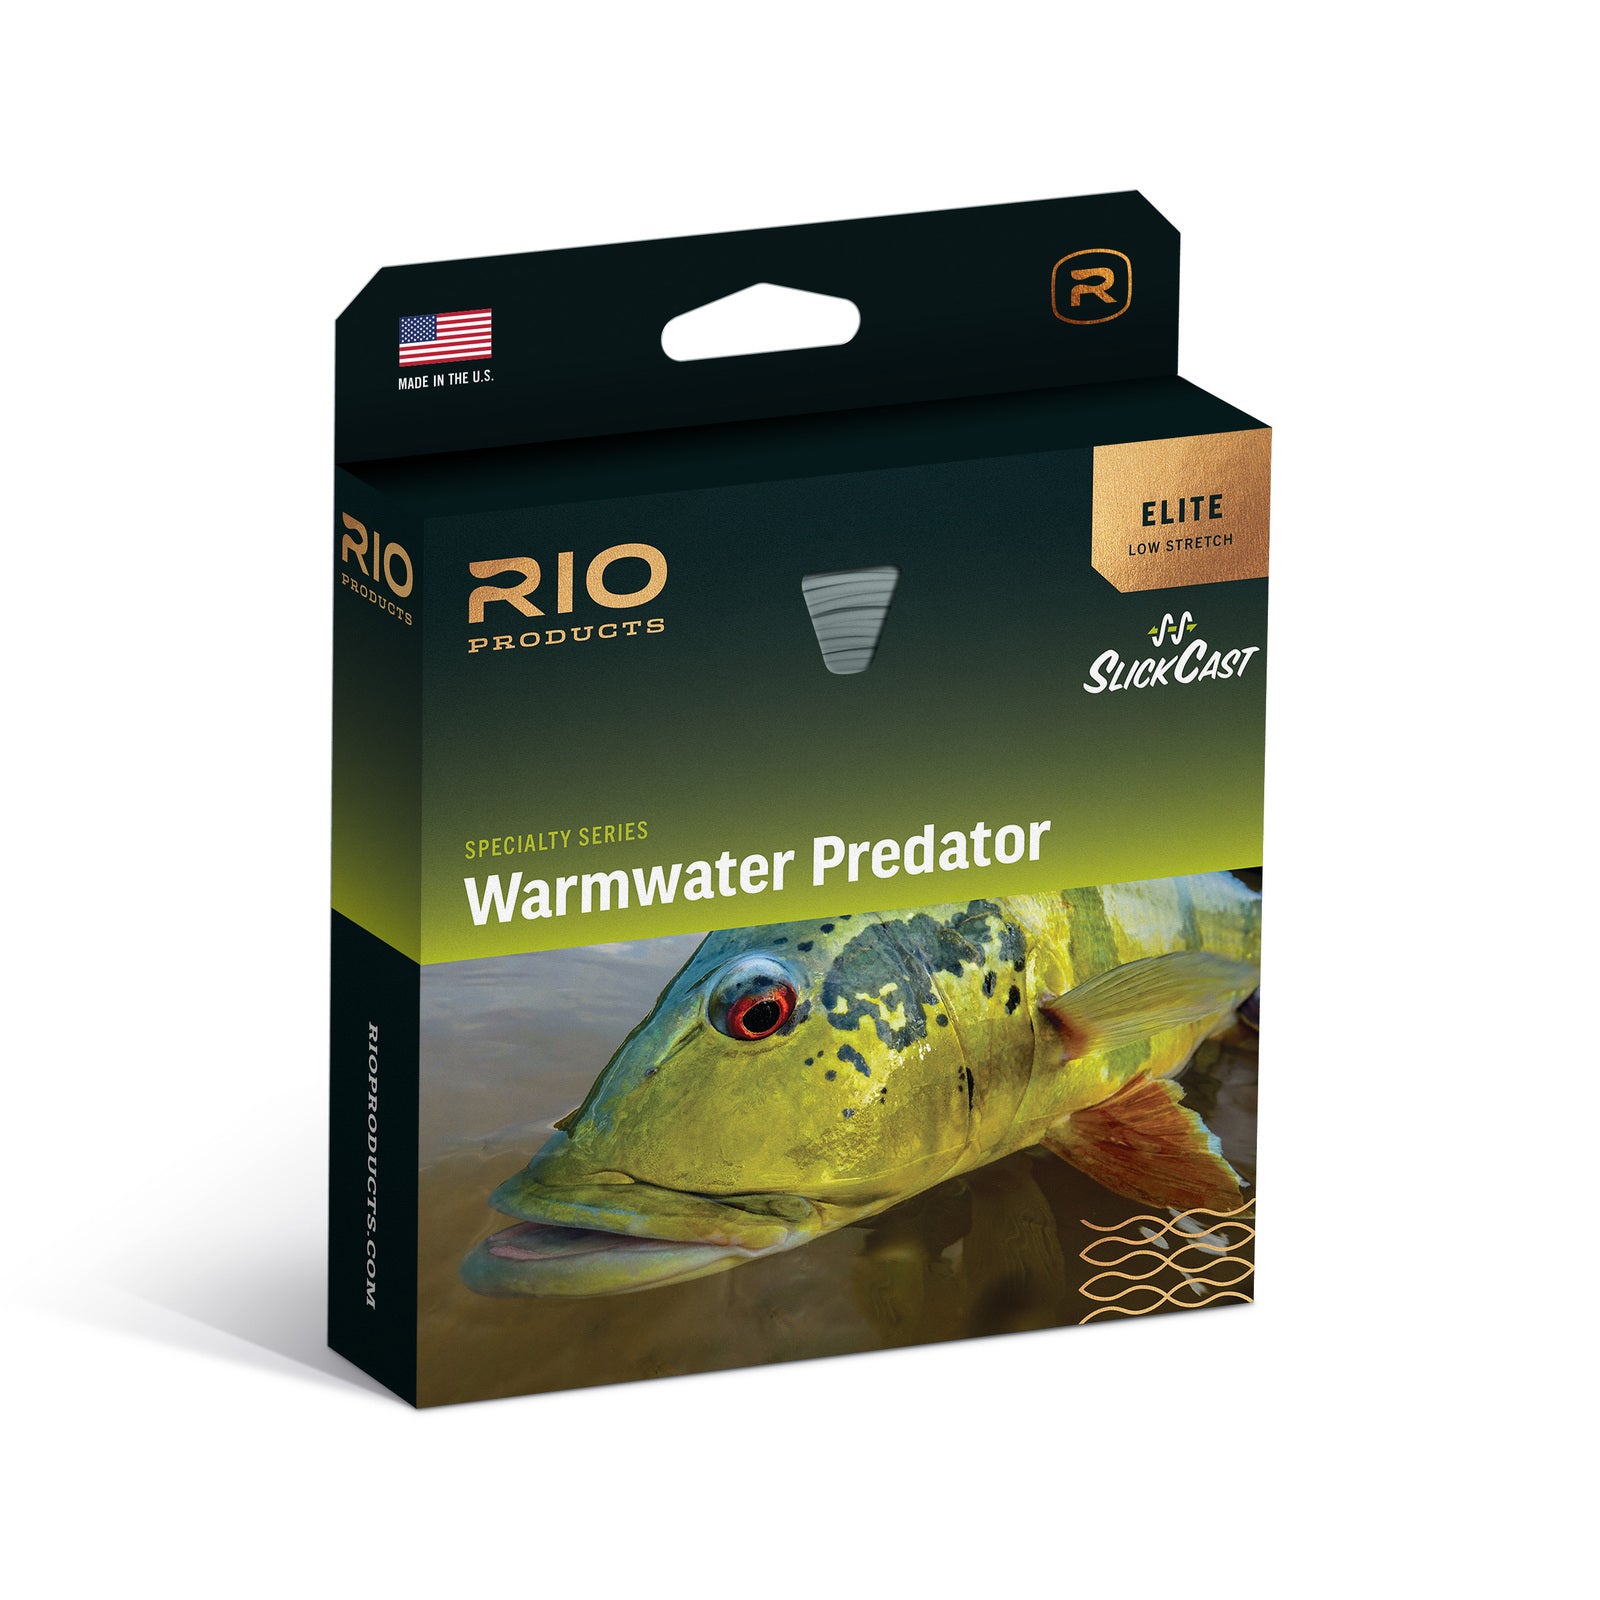 Rio Premier Streamer Tip Fly Line